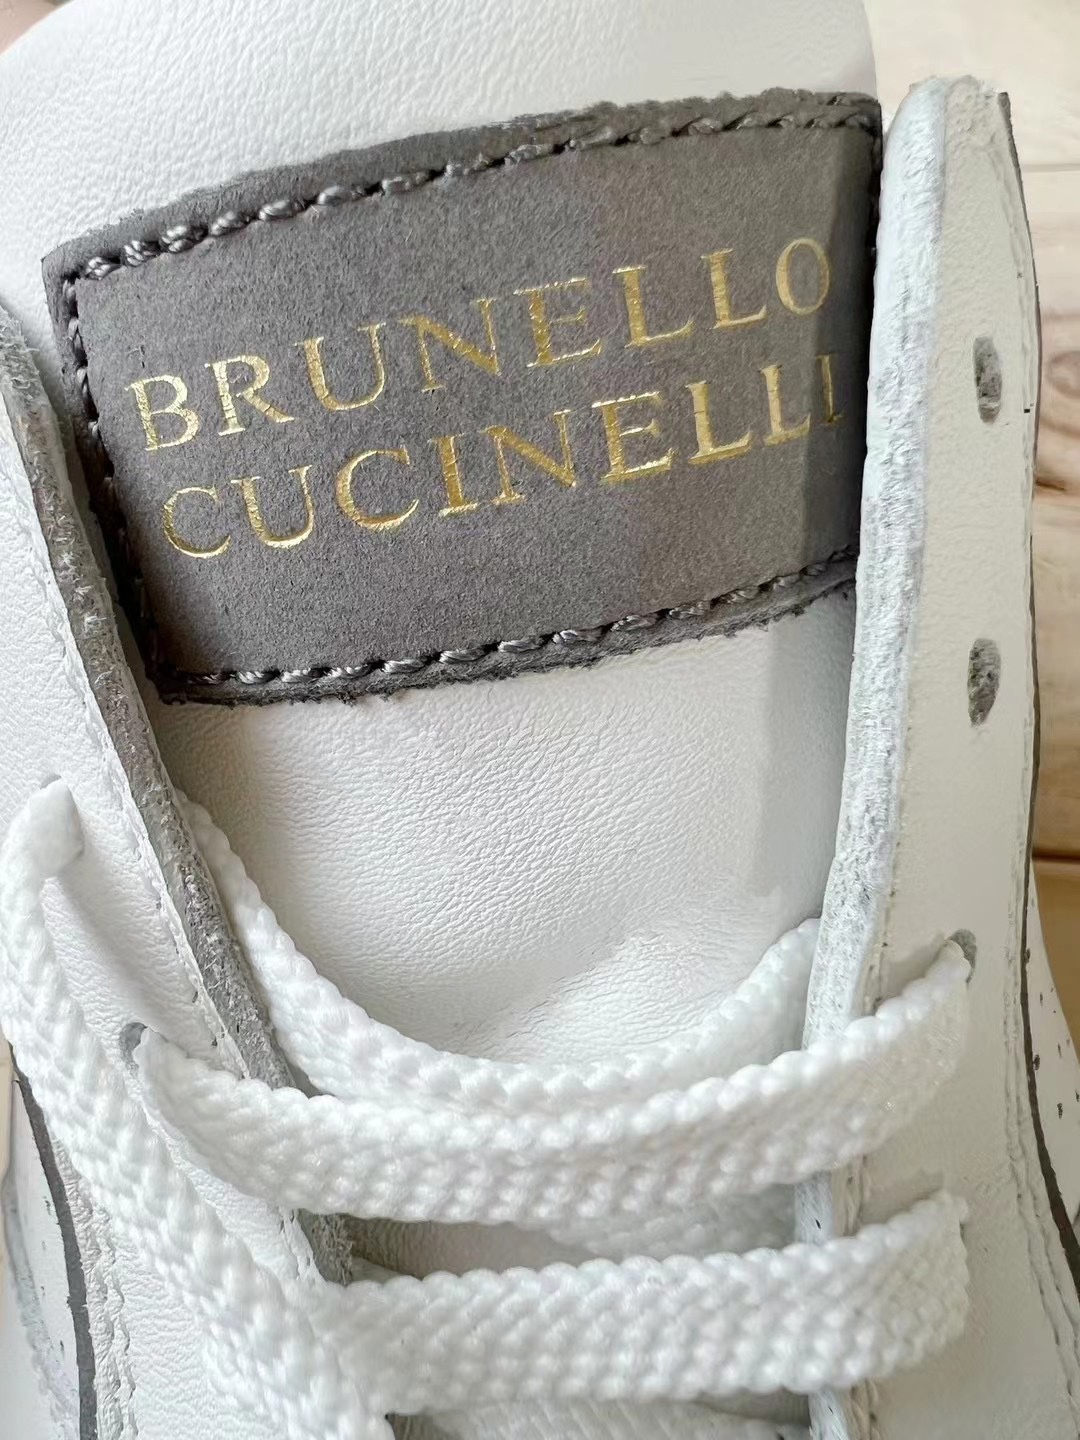 BrunelloCucinelli.